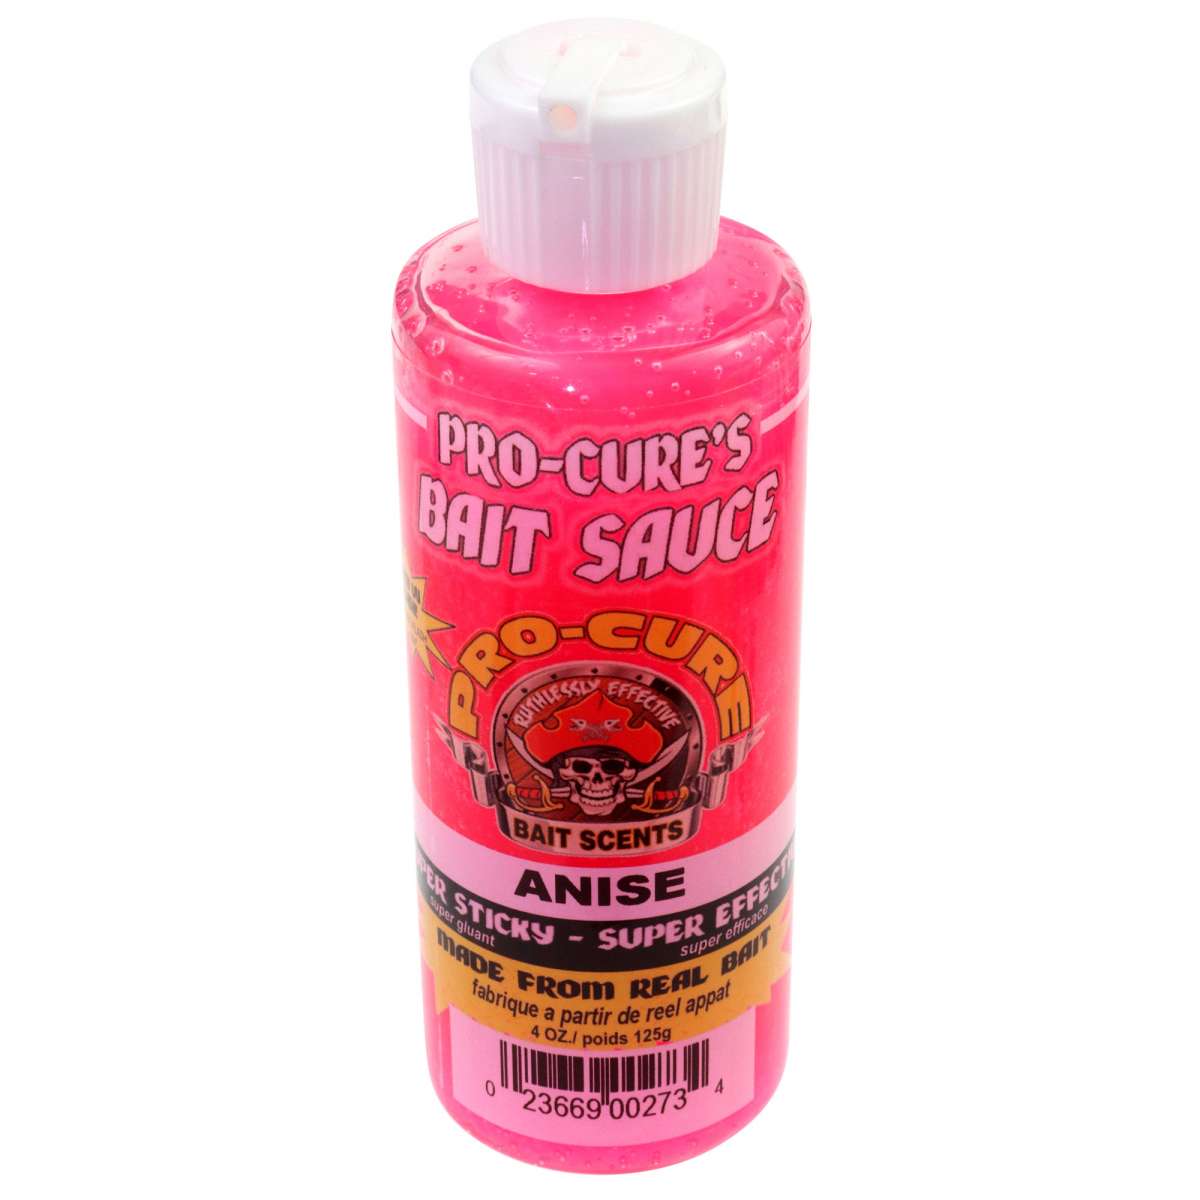 Pro-Cure Super Sauce- Anise- 4 oz.